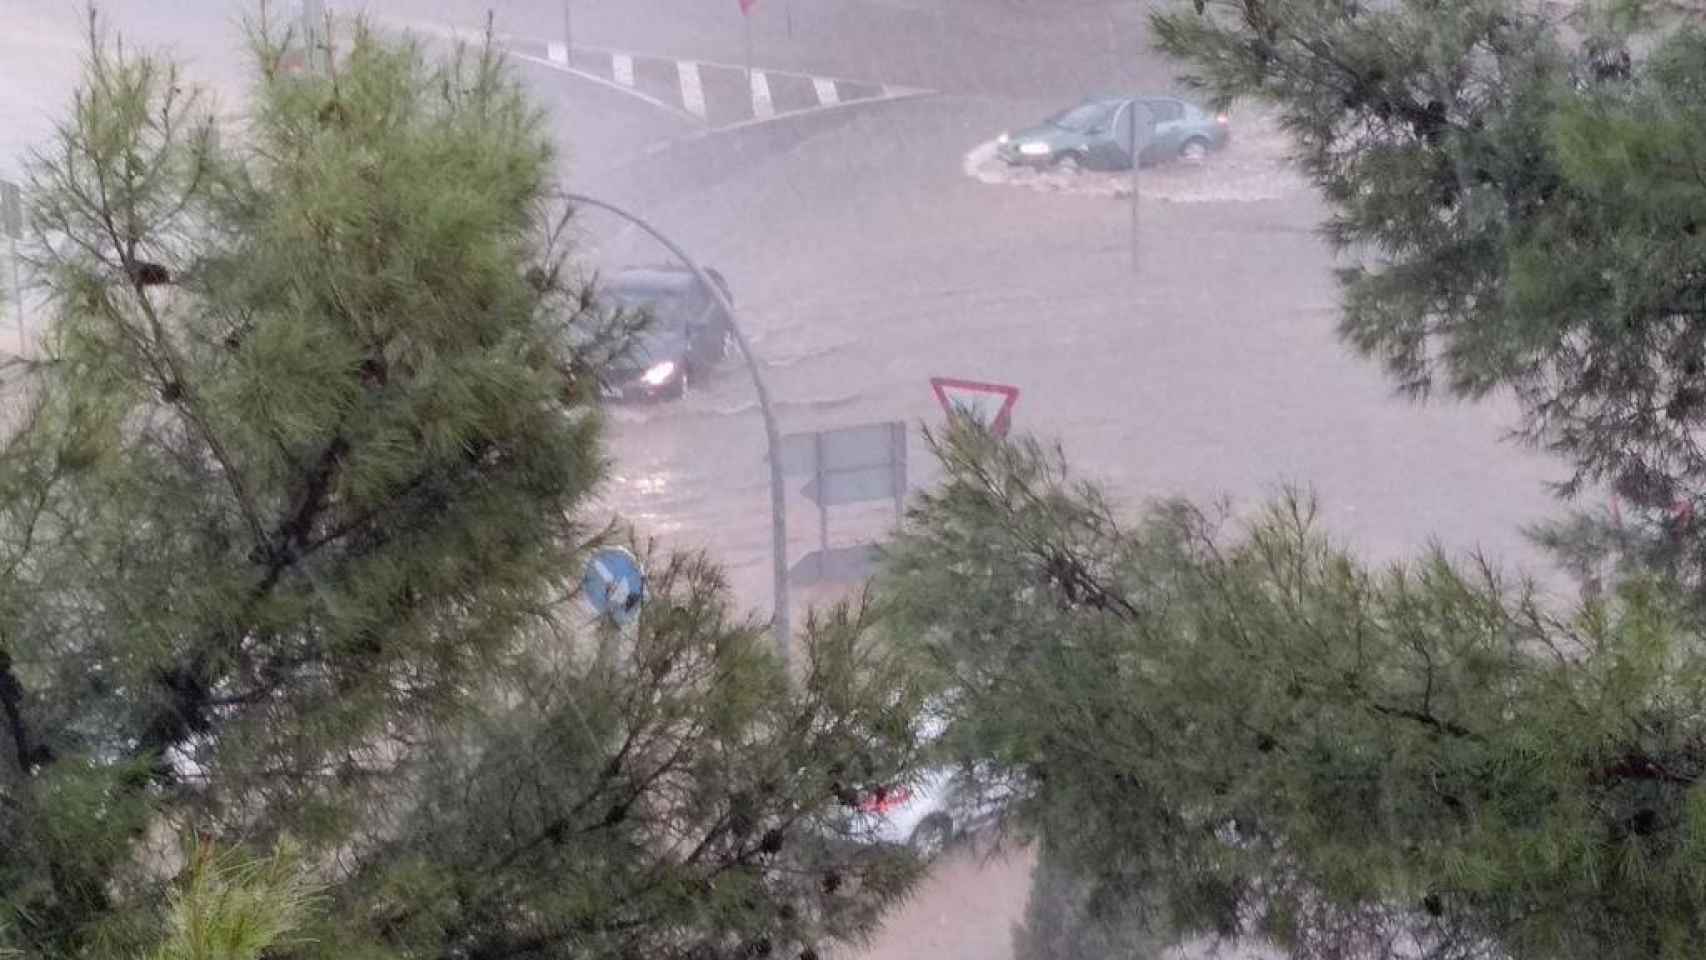 Inundaciones por la tormenta de este domingo en Ciudad Real capital. Foto: Twitter Ayuntamiento de Ciudad Real. Abajo fotos del Twitter de Meteocr